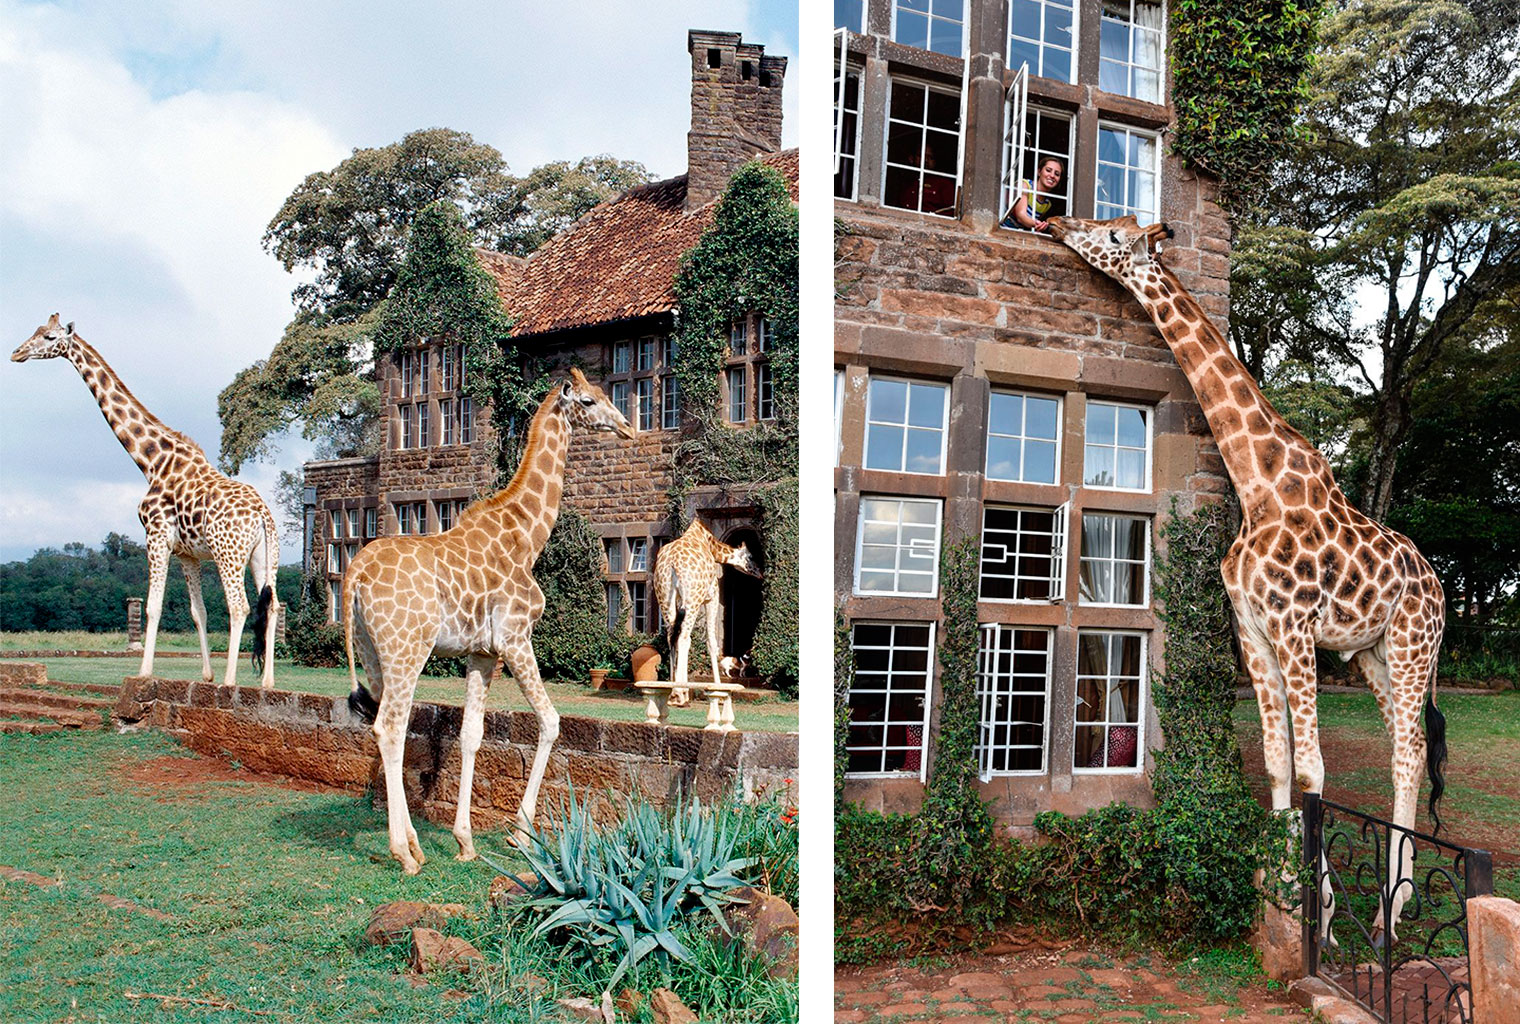 Giraffe Manor Hotel Boutique - Se hospedando com girafas!